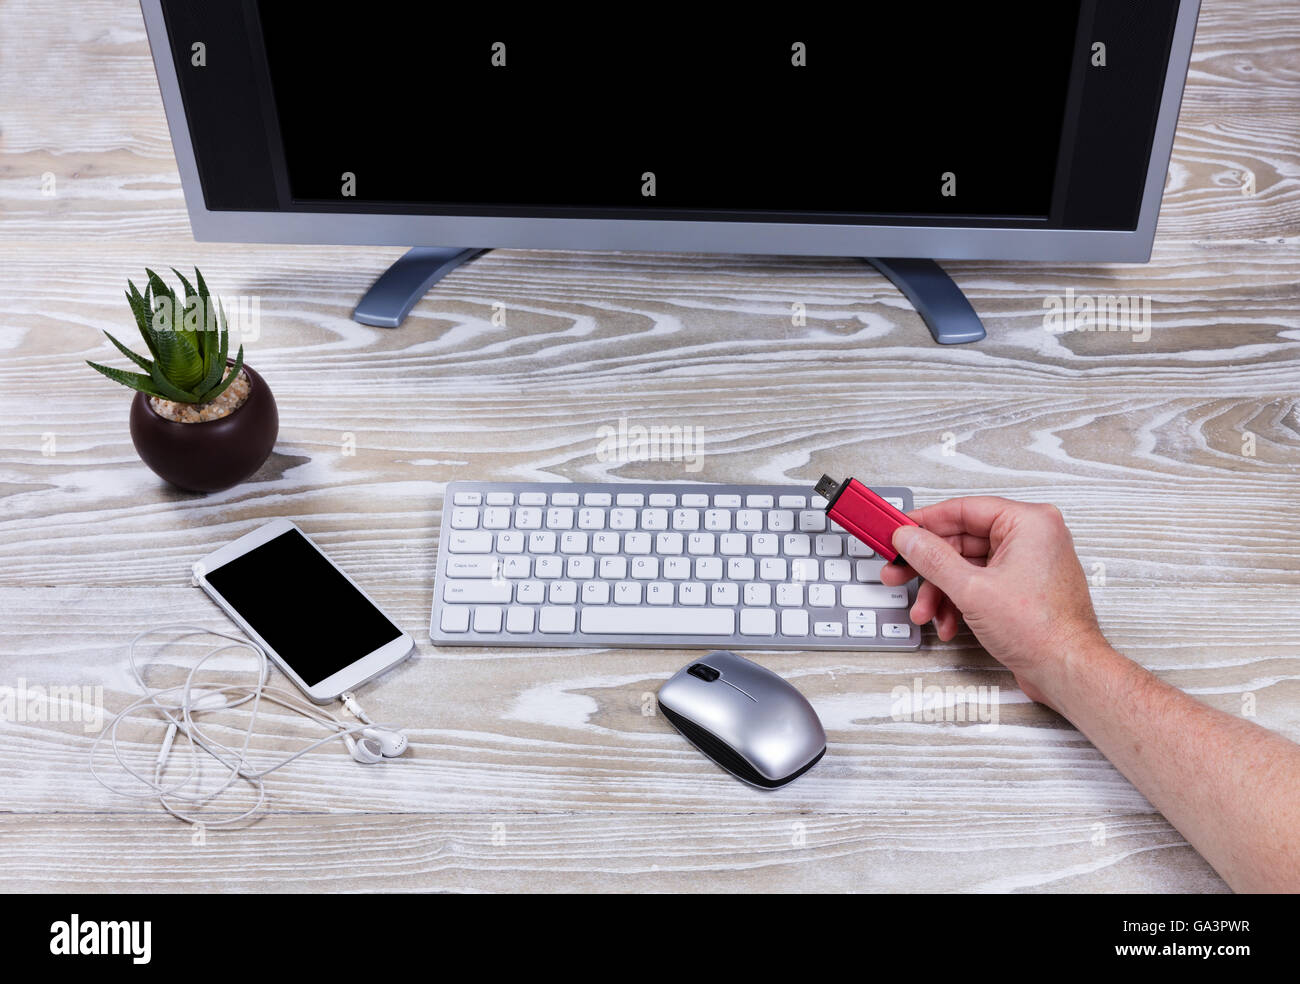 Vista aerea di lavoro desktop con la mano che regge lo storage dei dati thumb drive. Foto Stock